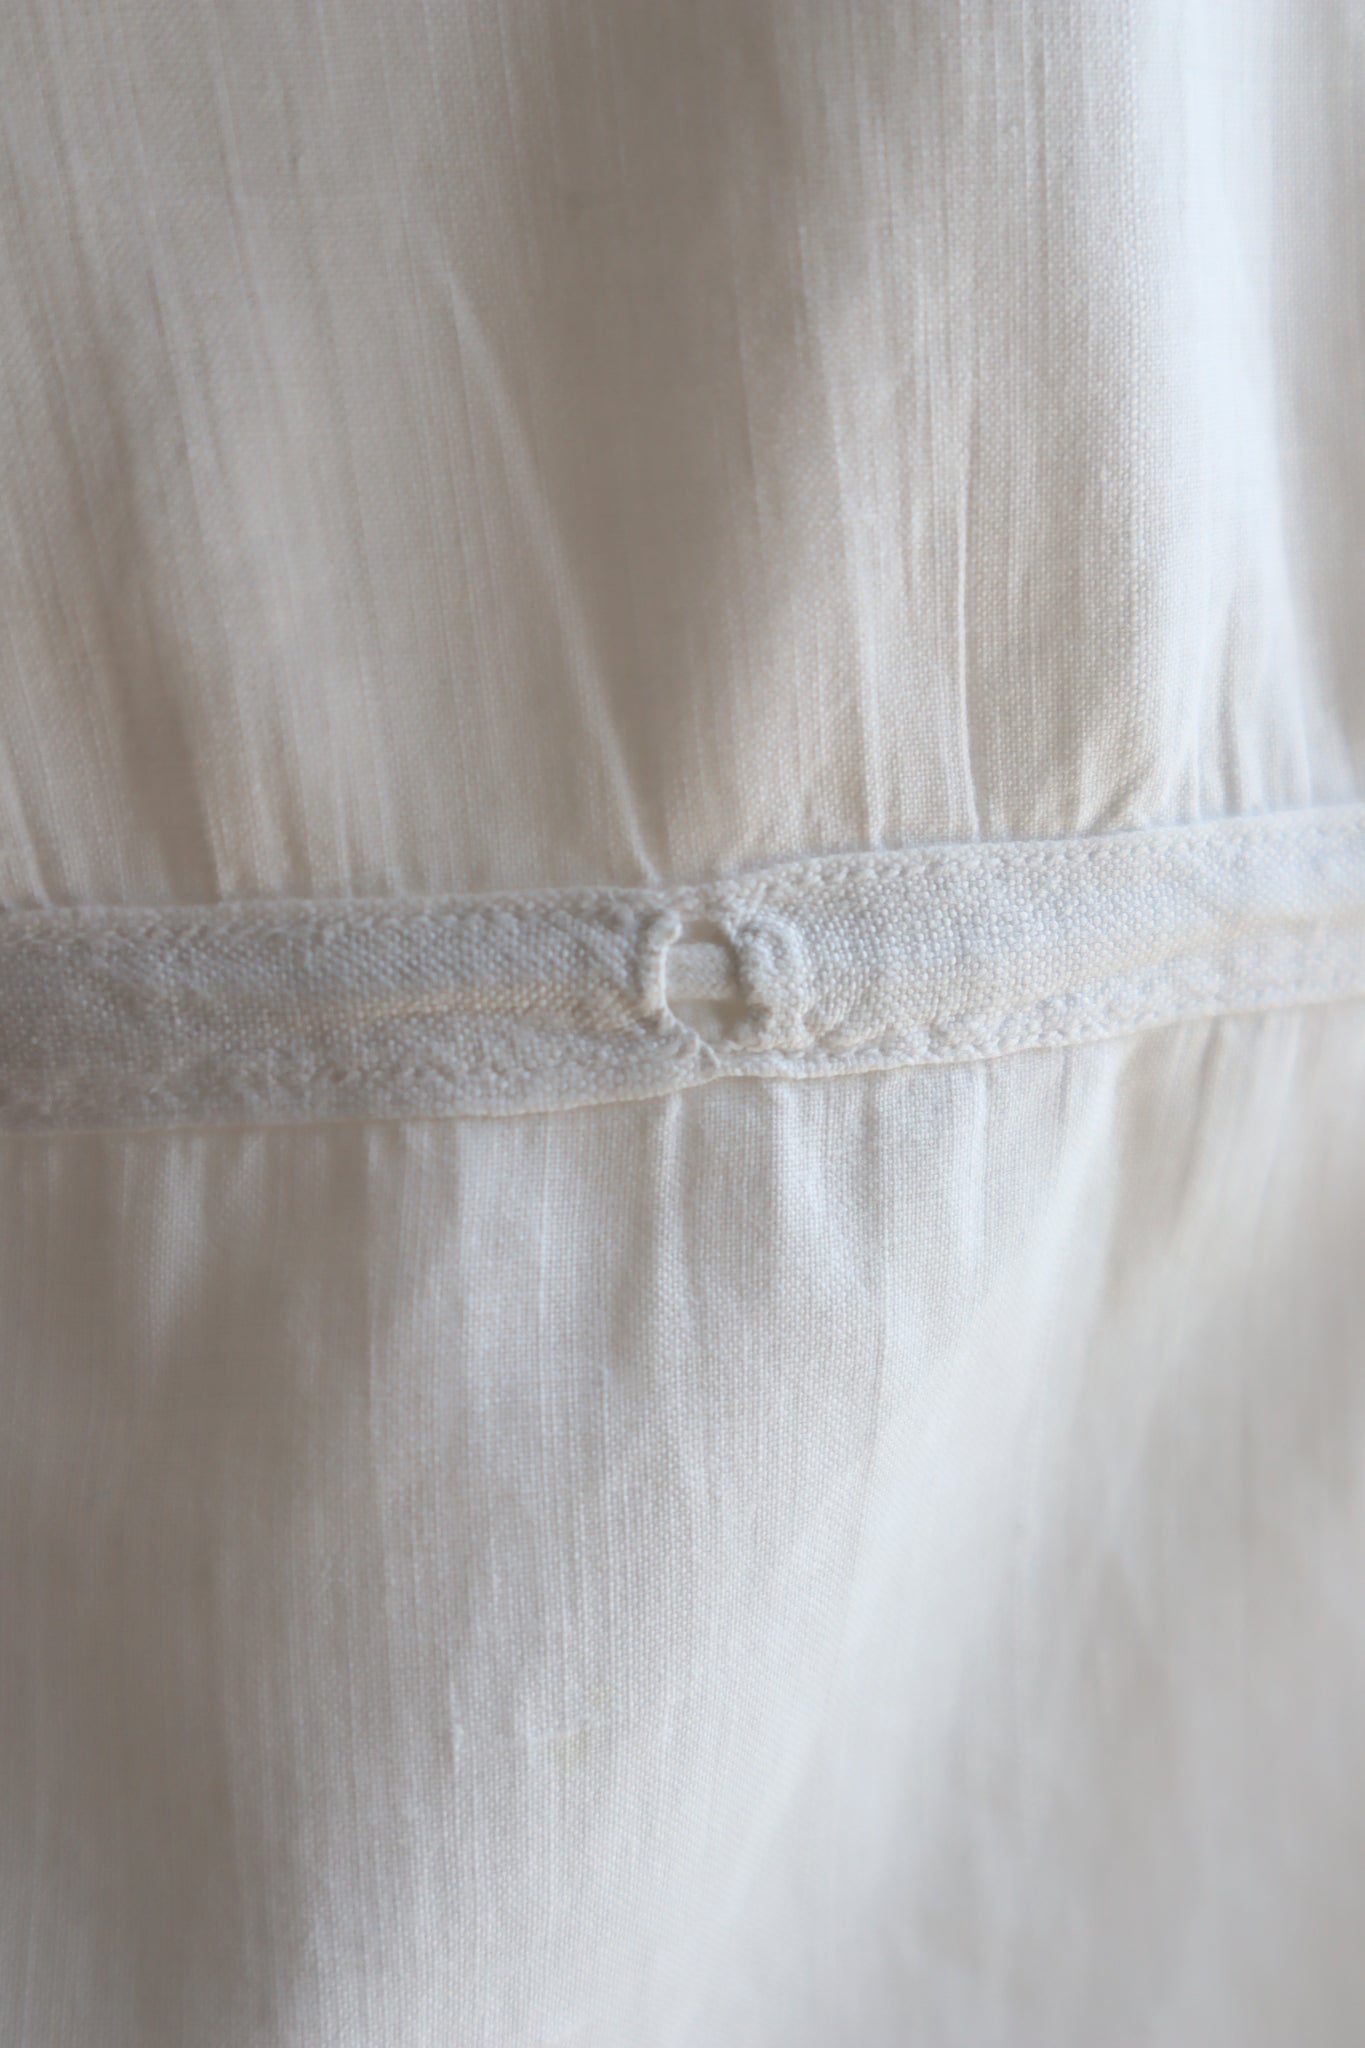 1920s White Cotton Corset Cover